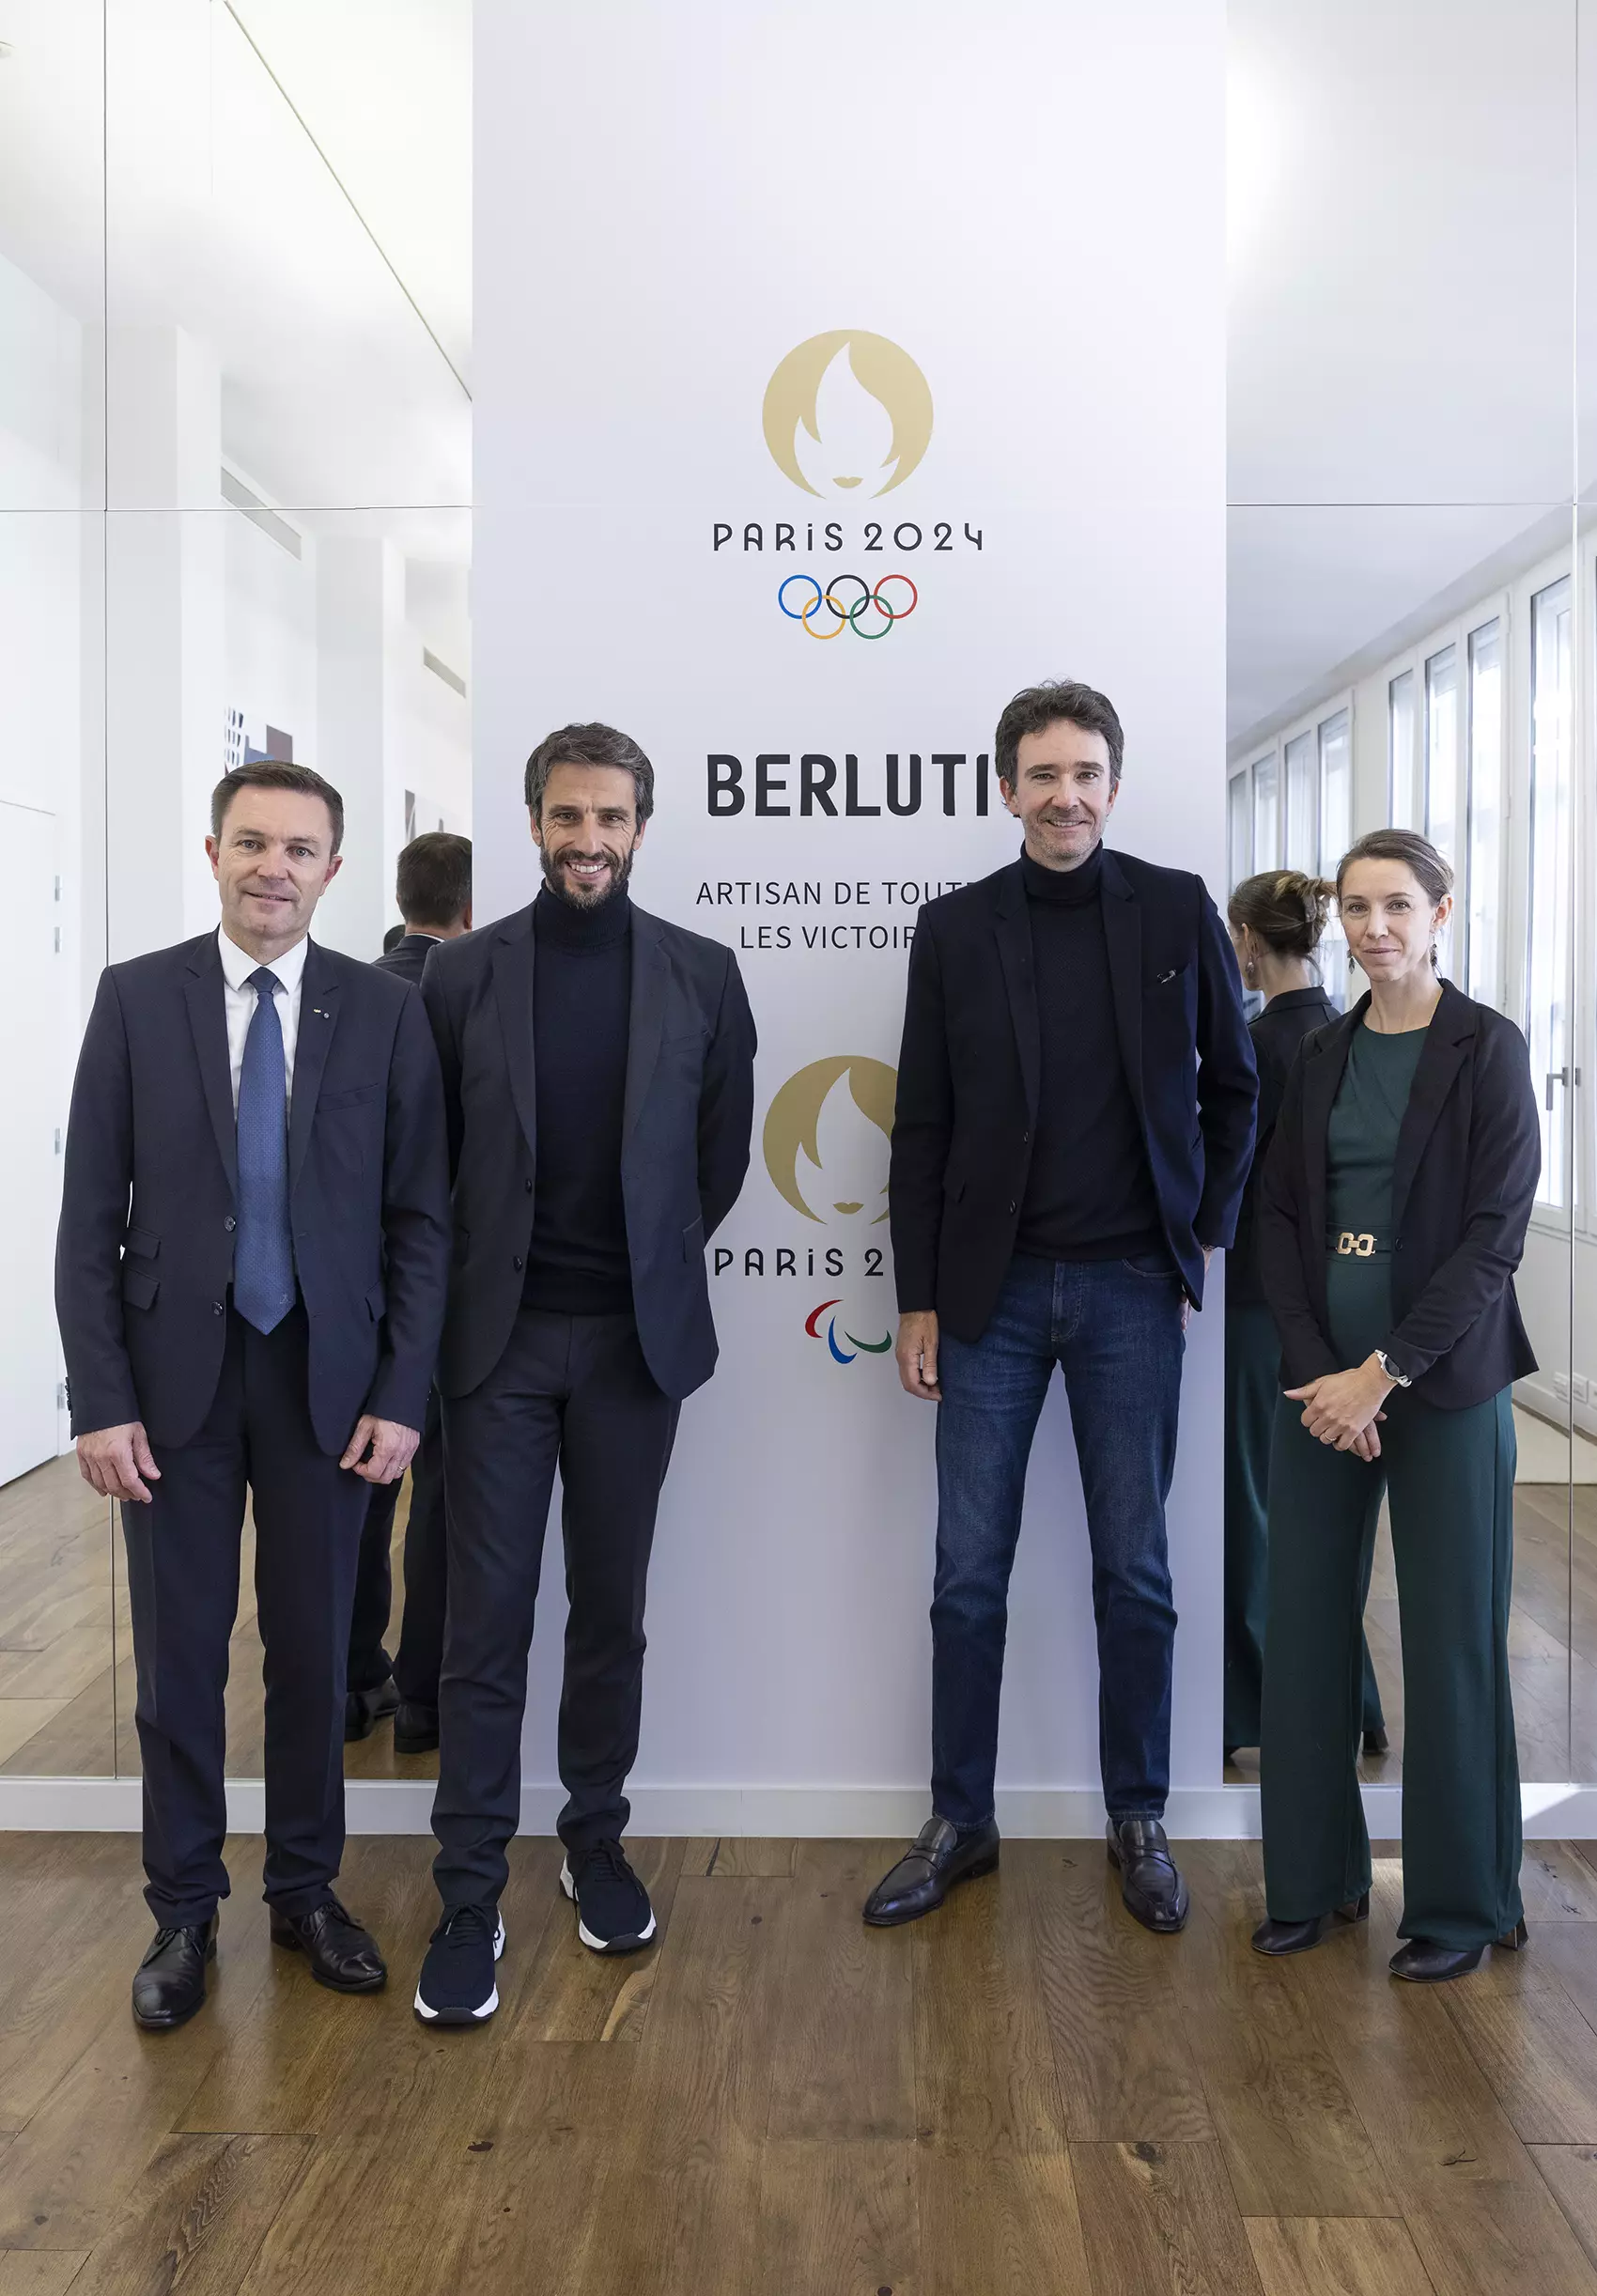 Berluti est l'équipementier officiel des équipes françaises lors des cérémonies d'ouverture des Jeux olympiques et paralympiques de Paris 2024